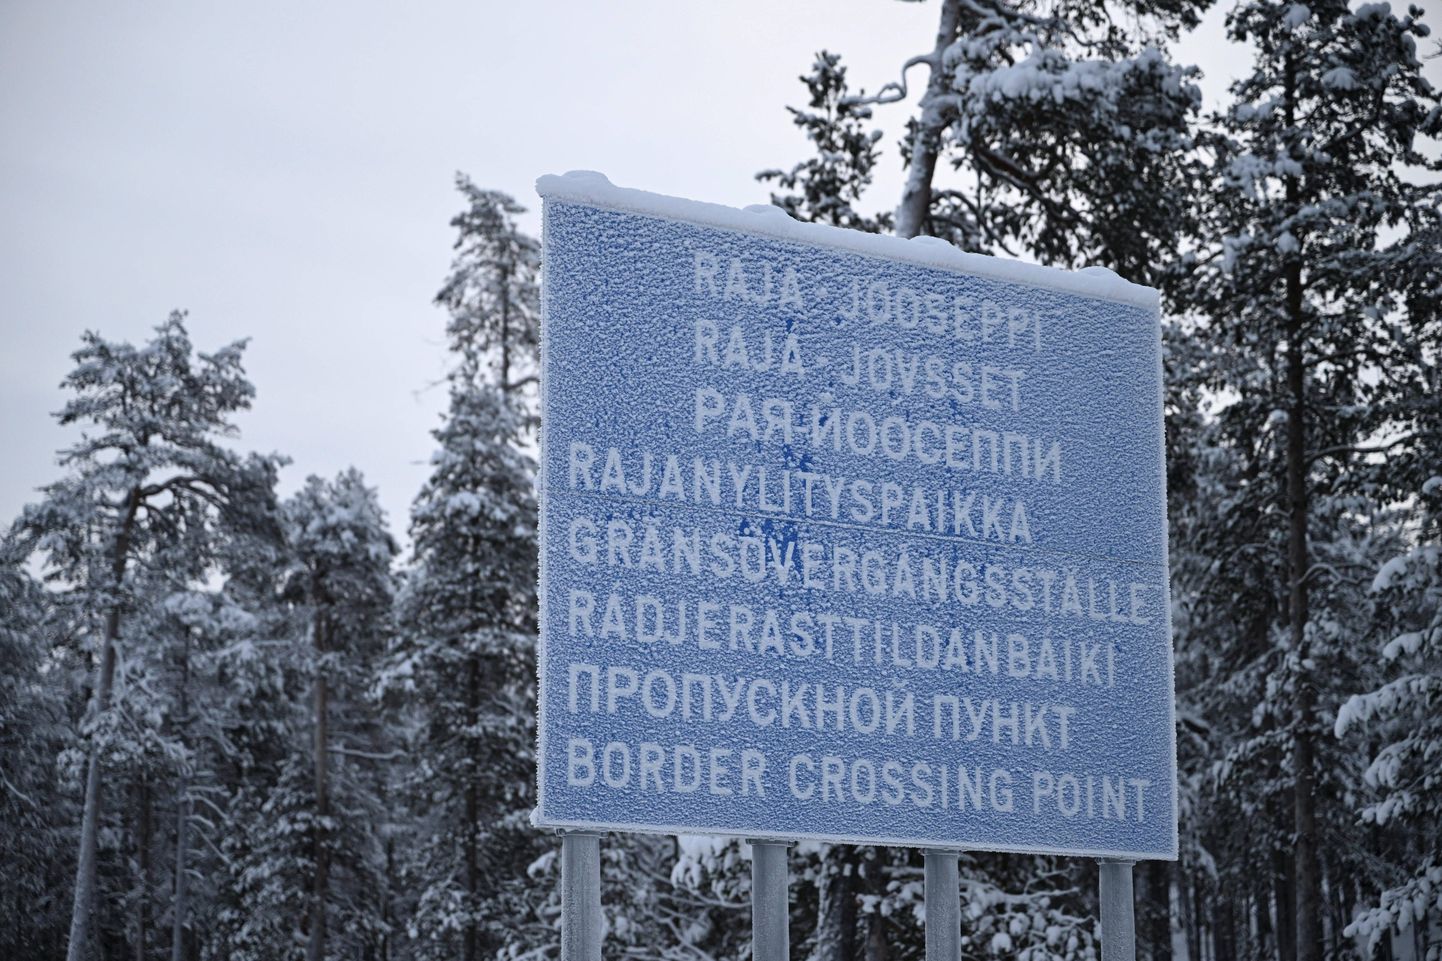 Soome Lapimaa Inari Raja-Jooseppi piiripunkti silt. Tegemist on praegu ainsa Soome piiripunktiga, mis vastu Vene piiri lahti on. Raja-Jooseppi kannab kunagi elanud eraku nime.